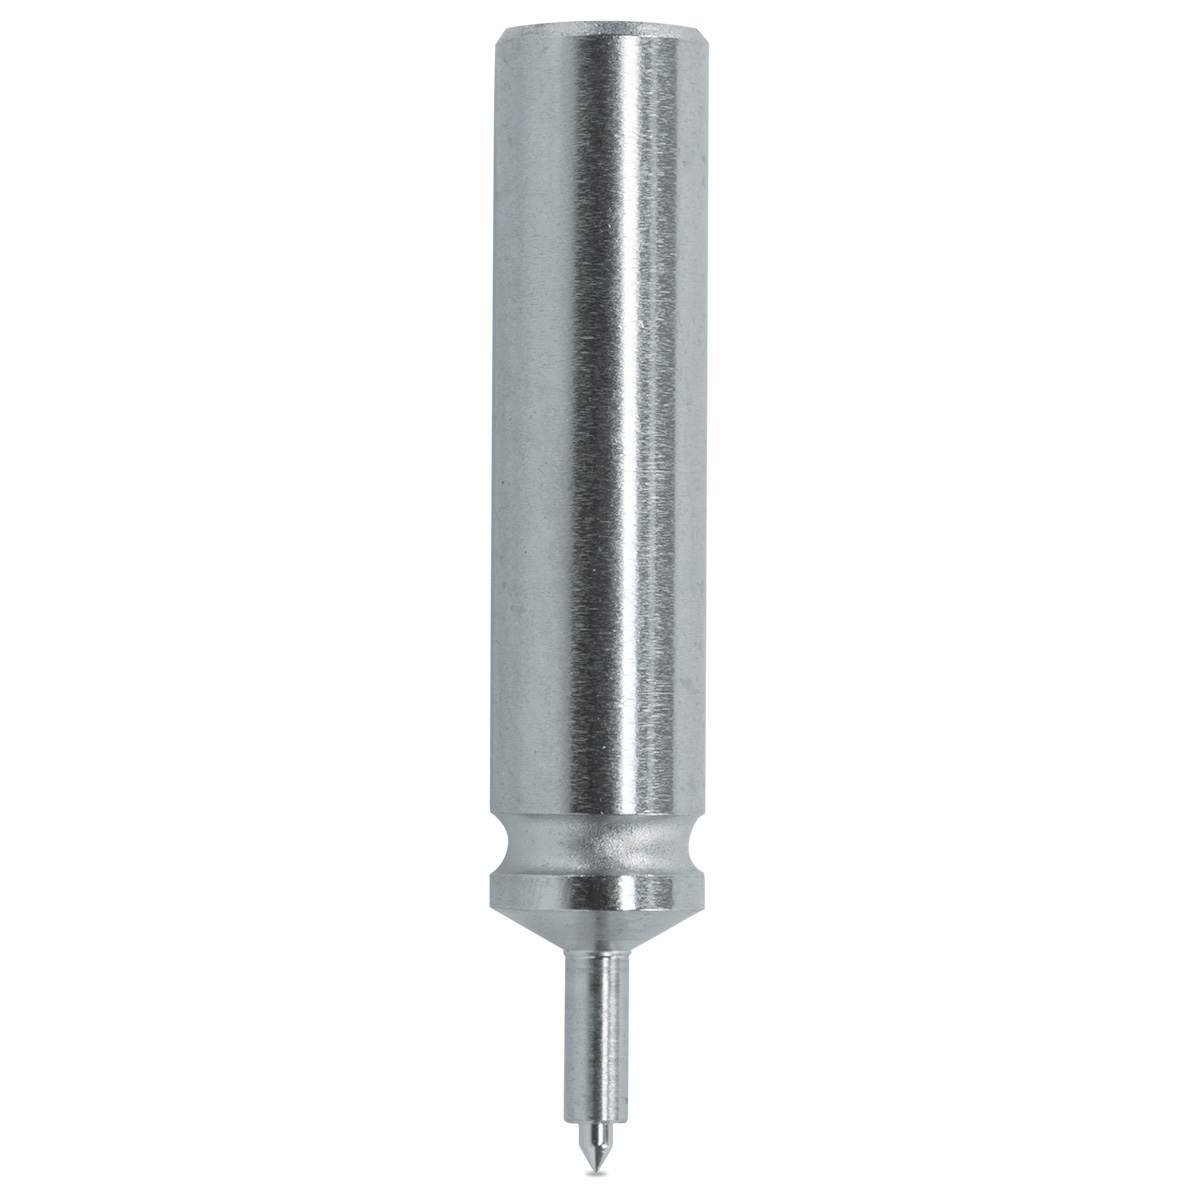 Federnder Stempel HORIA N°50-3Ø aussen 0.45 mm / Ø Pumpe 0.20 mm